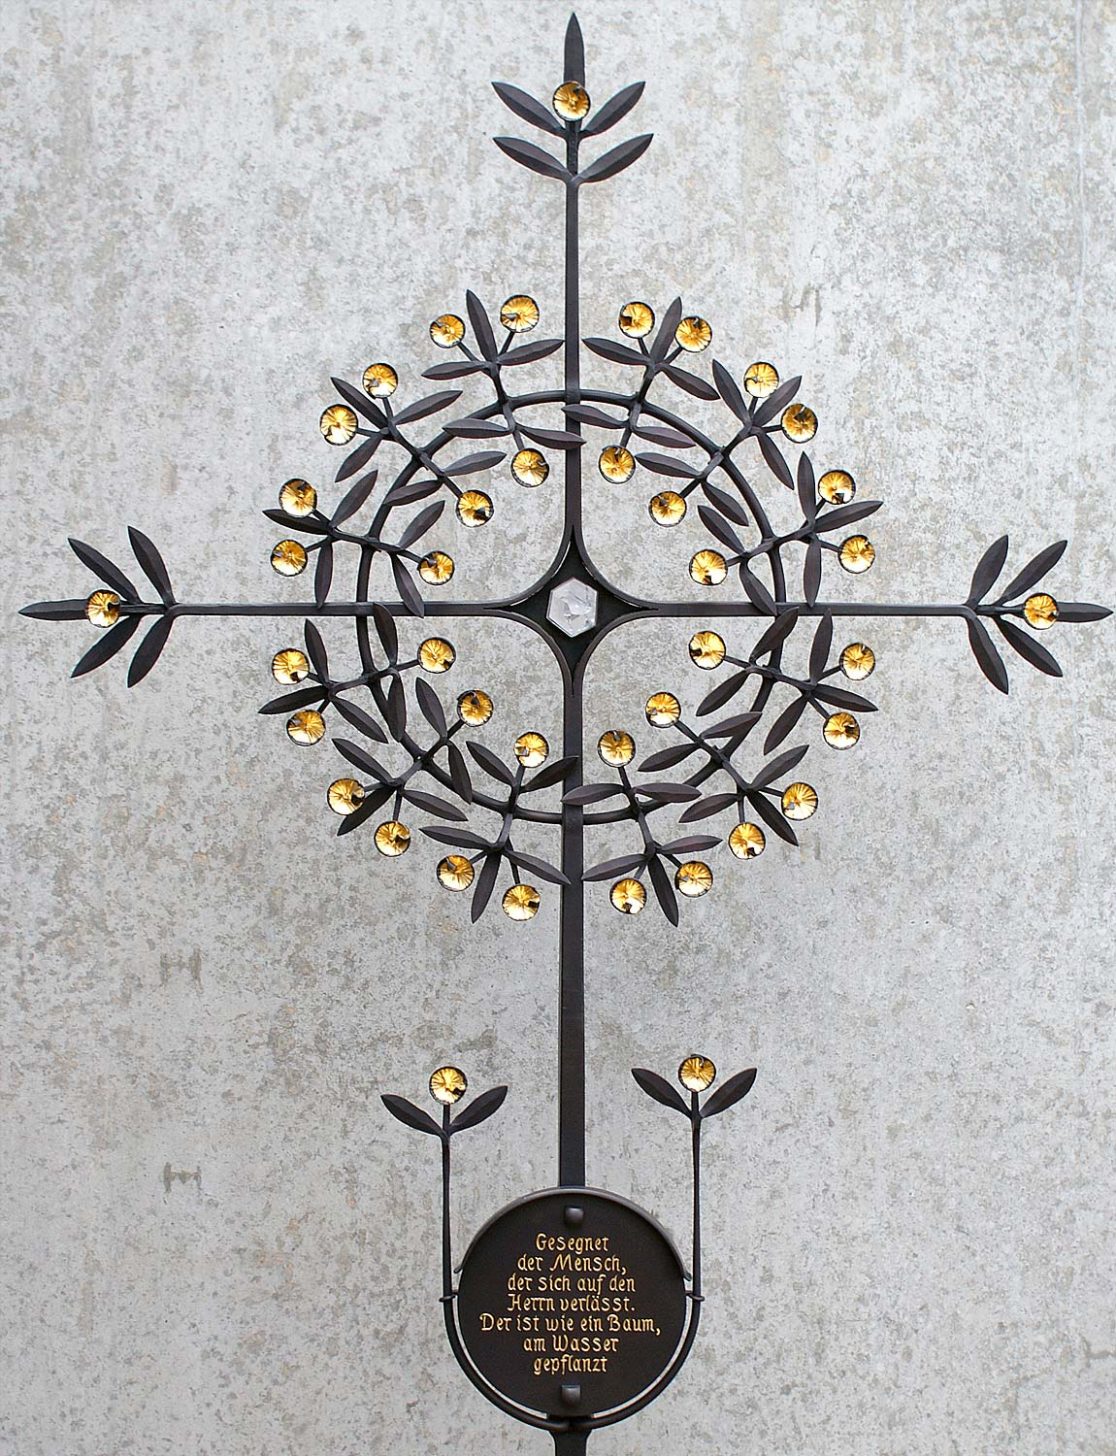 Zeitgenössisches Grabkreuz mit Blüten und Blättern aus Bronze geschmiedet